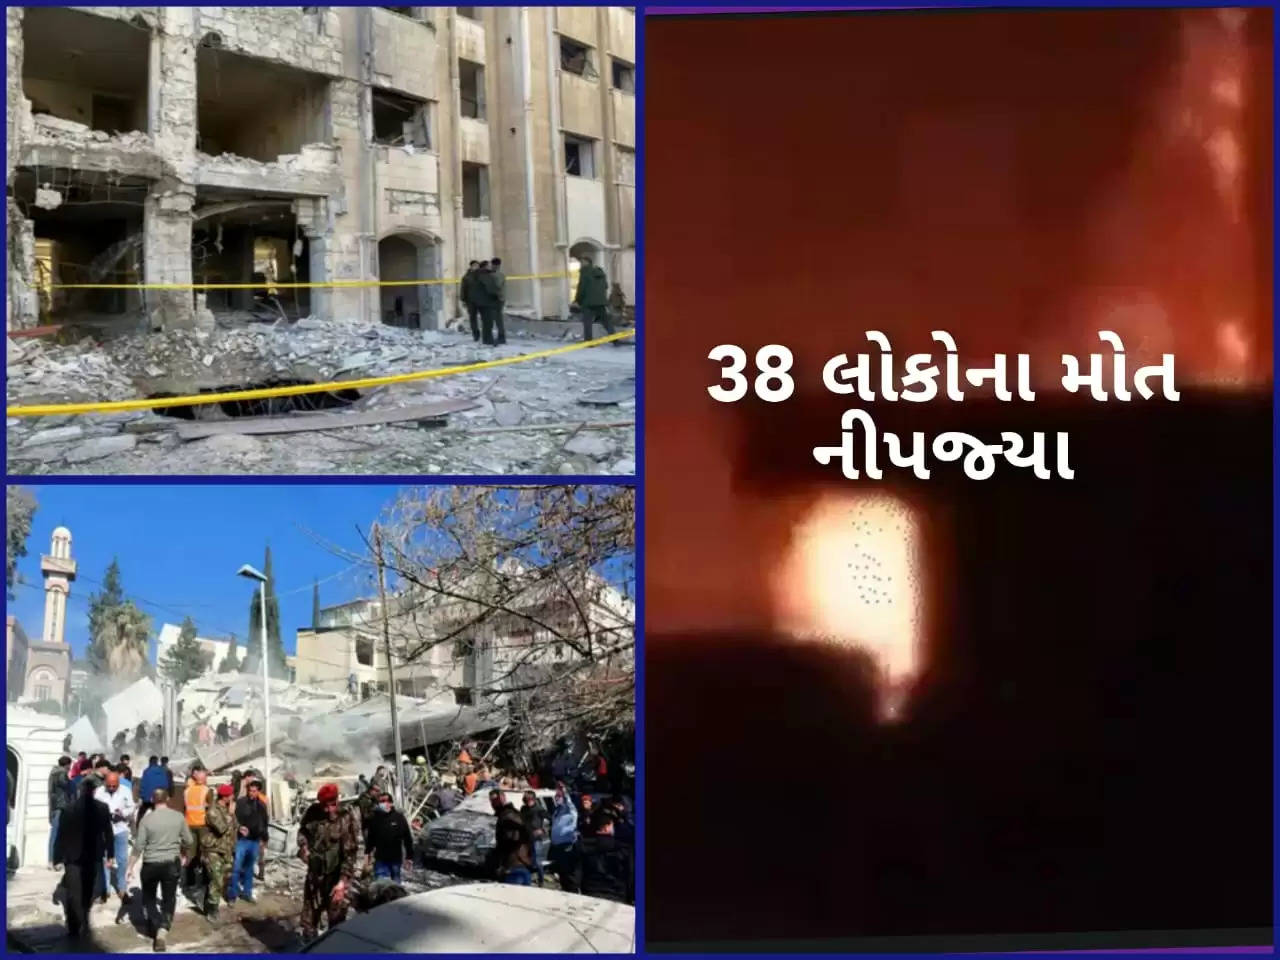 અપડેટ@દેશ: દાવો- ઇઝરાયલે સીરિયામાં હિઝબુલ્લાહના ઠેકાણાઓ પર હુમલો કર્યો, 38 લોકોનાં મોત નીપજ્યા